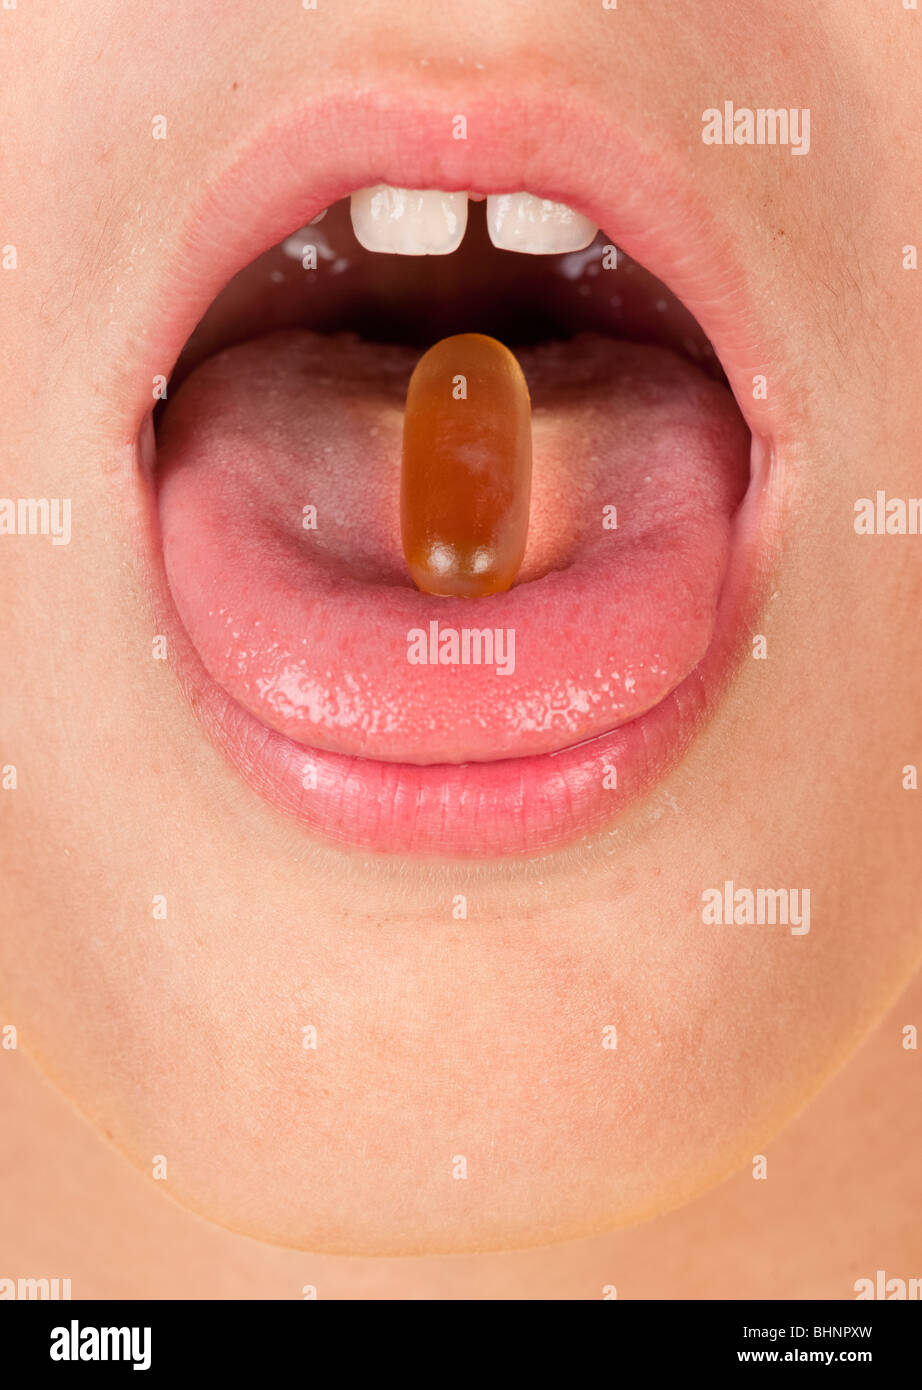 Ragazzi in bocca con una pillola o una capsula sulla linguetta Foto Stock